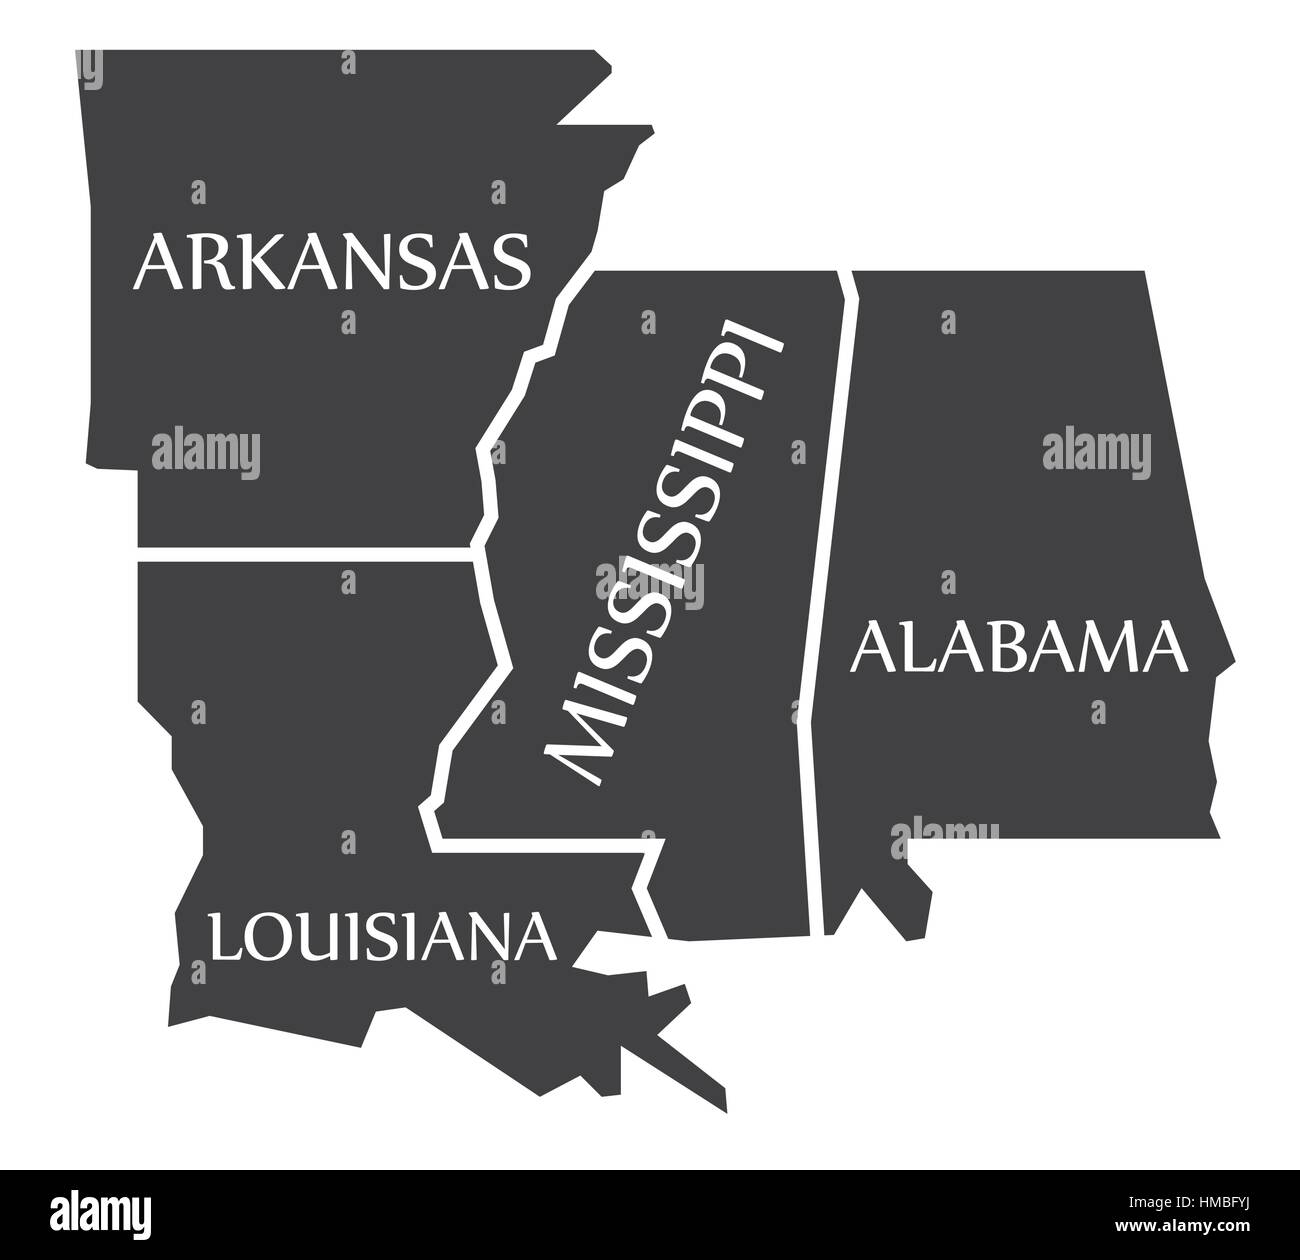 Arkansas - Louisiana - Mississippi - Alabama Karte schwarz Abbildung gekennzeichnet Stock Vektor